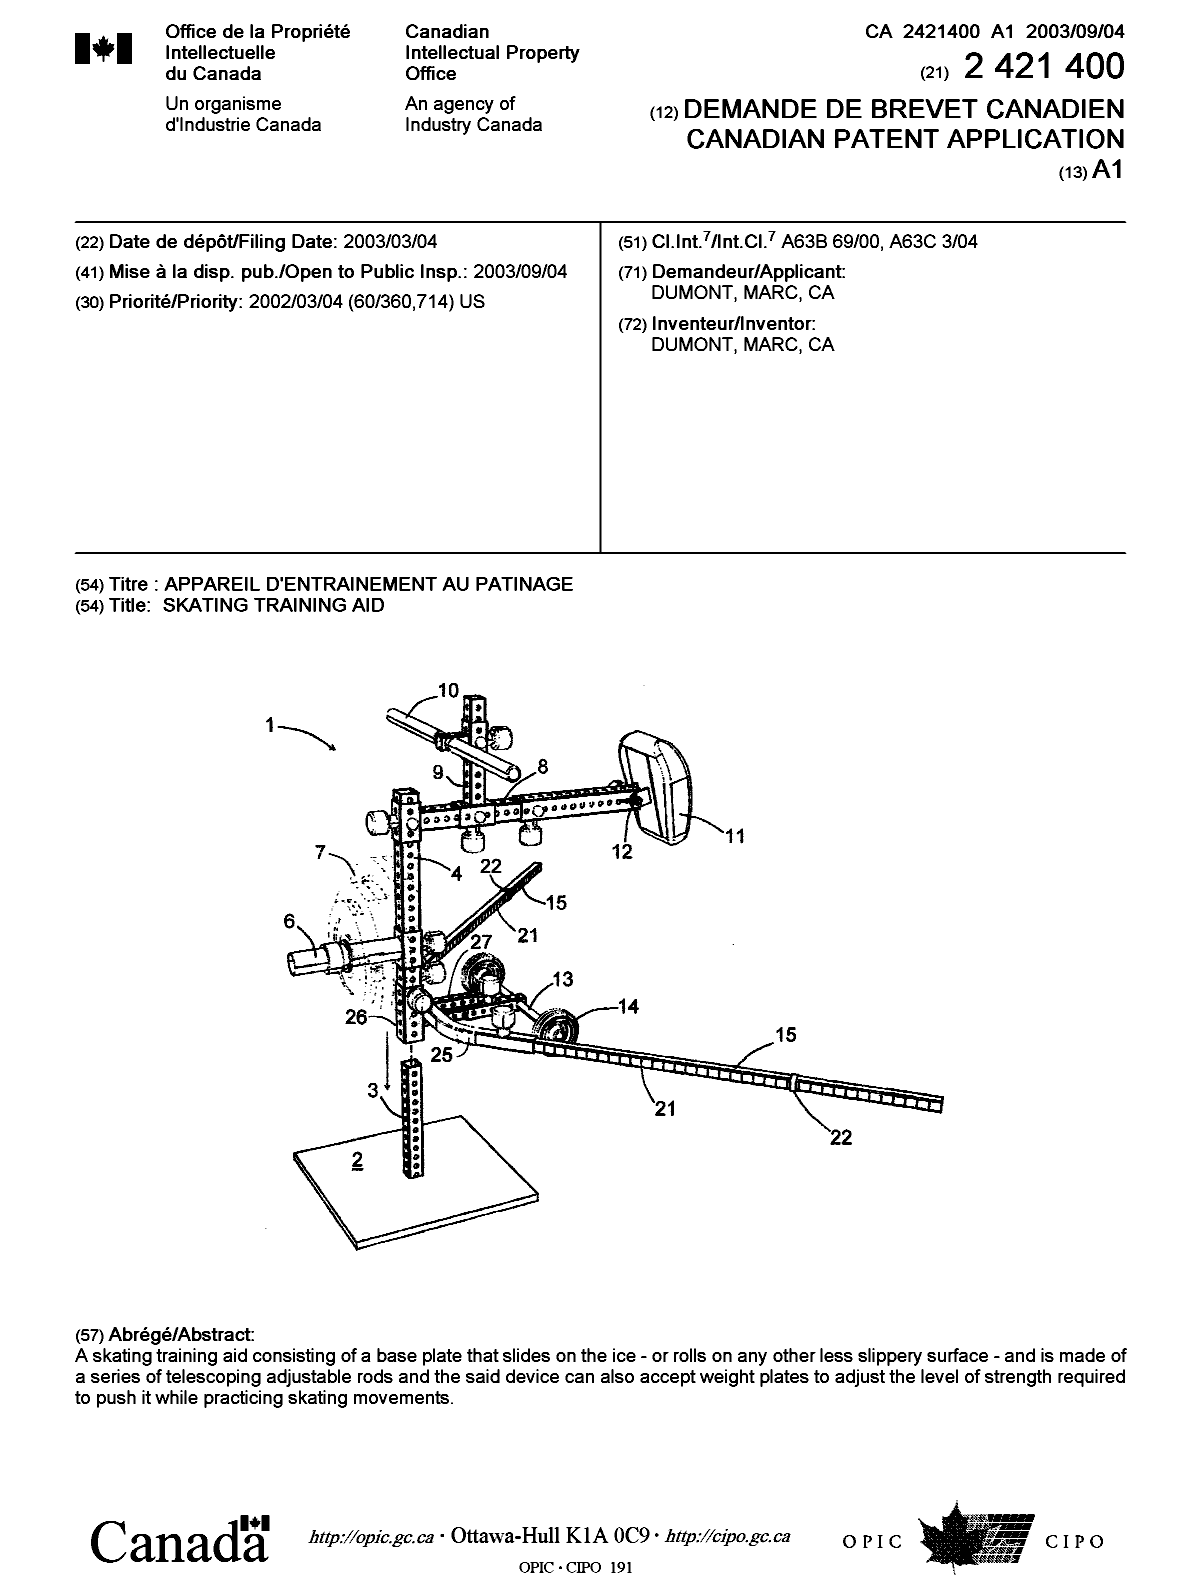 Document de brevet canadien 2421400. Page couverture 20021208. Image 1 de 1